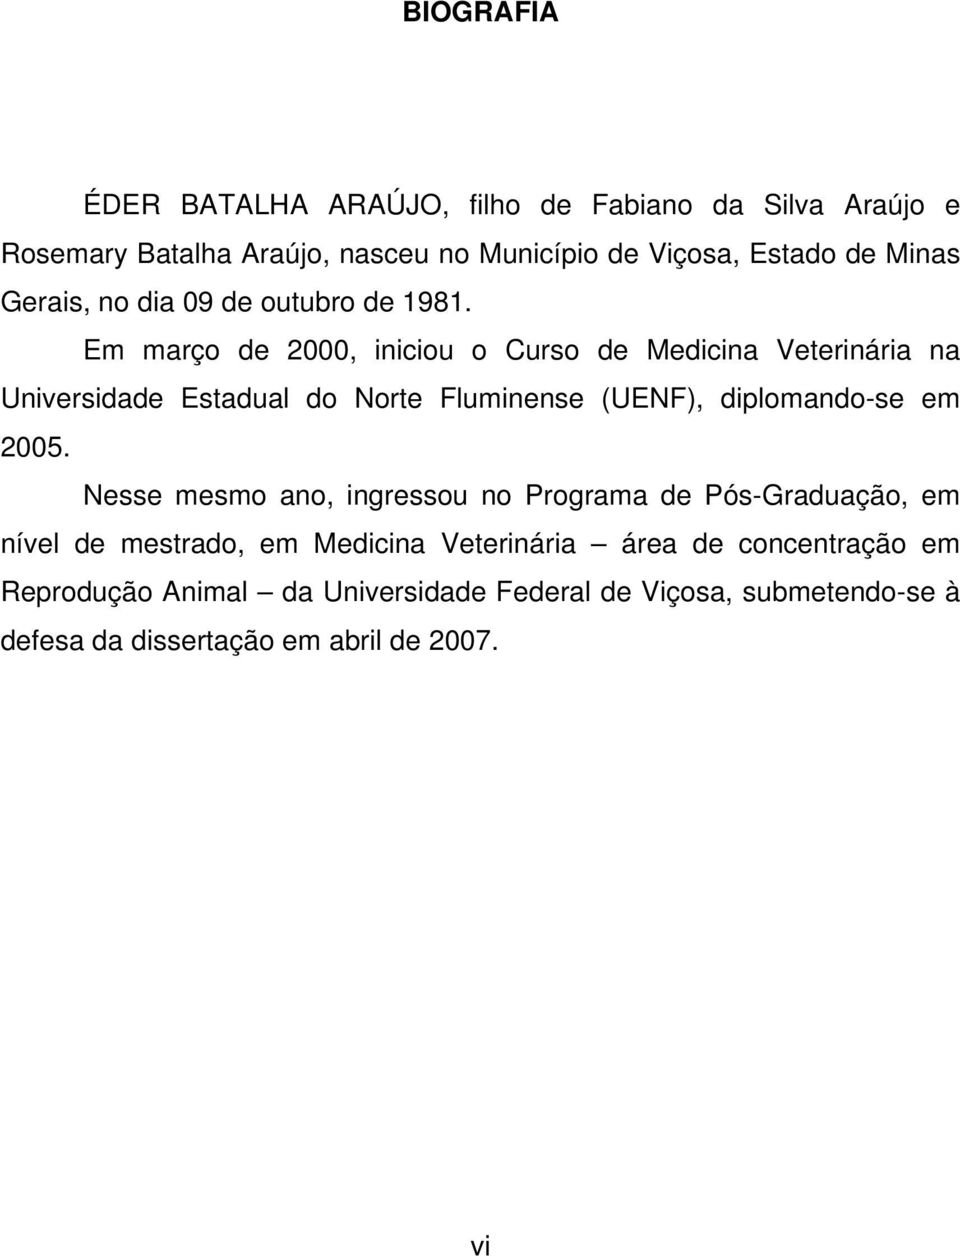 Em março de 2000, iniciou o Curso de Medicina Veterinária na Universidade Estadual do Norte Fluminense (UENF), diplomando-se em 2005.